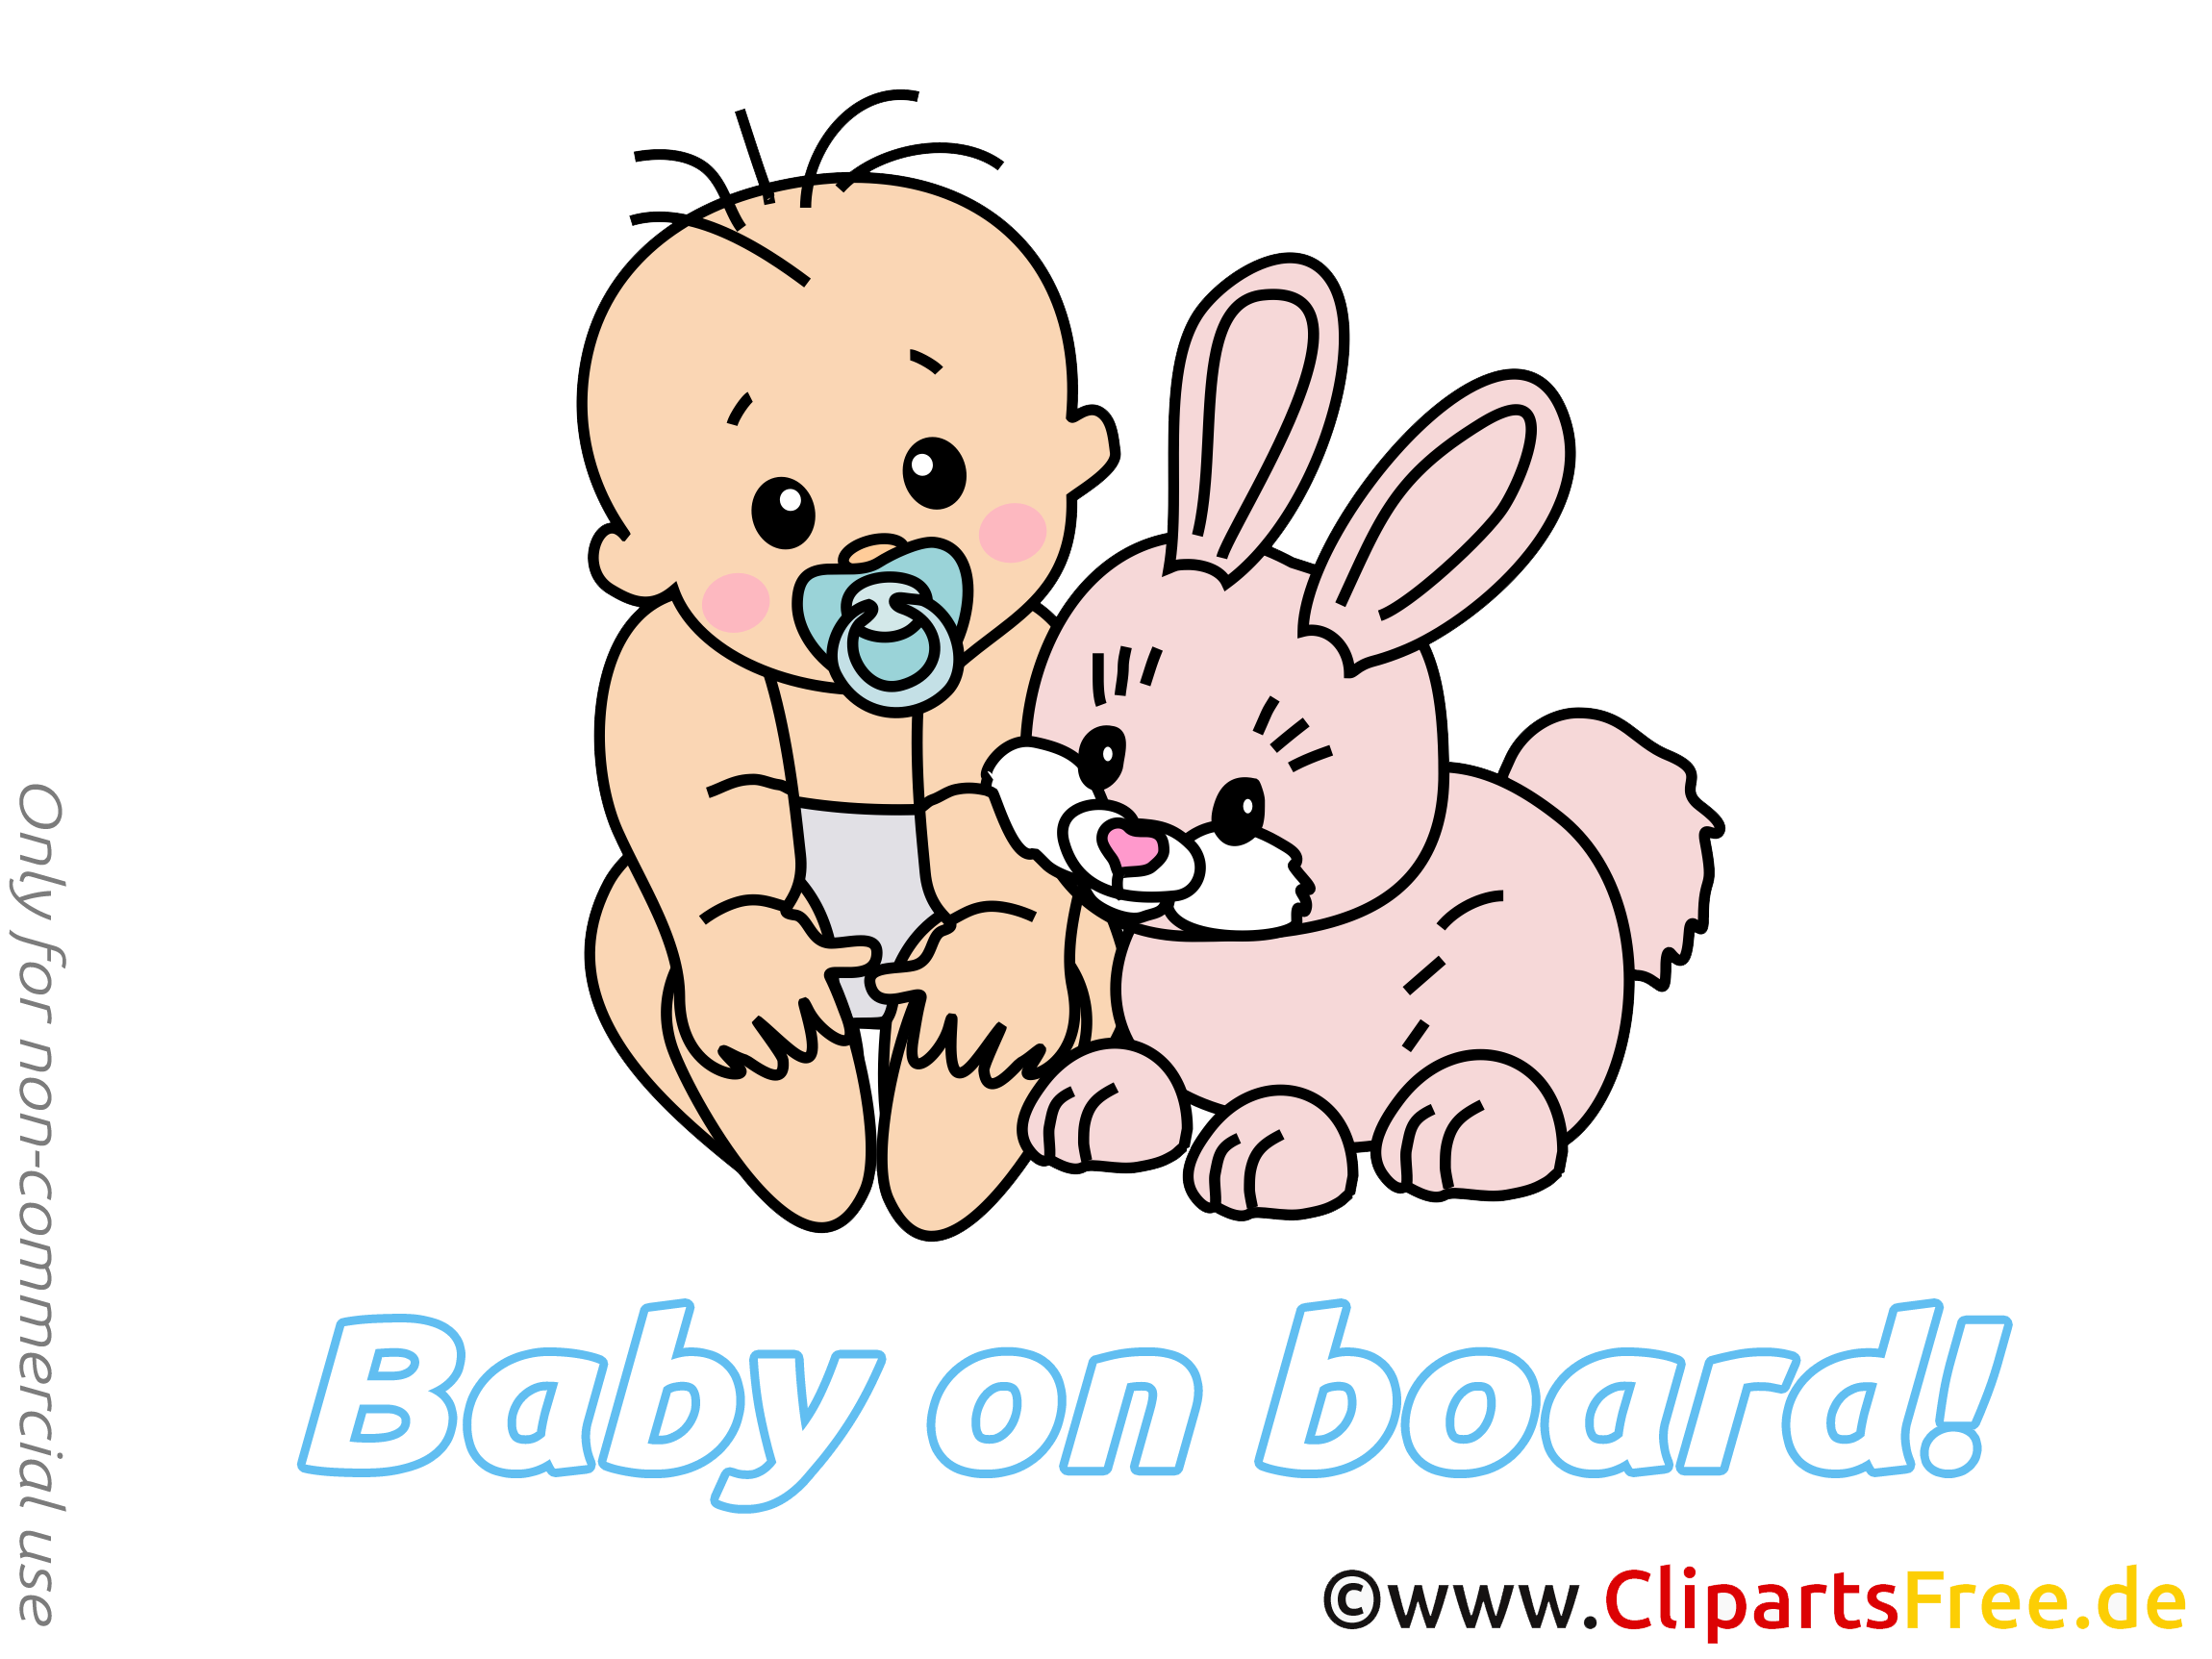 Bébé à bord illustration lapin gratuite